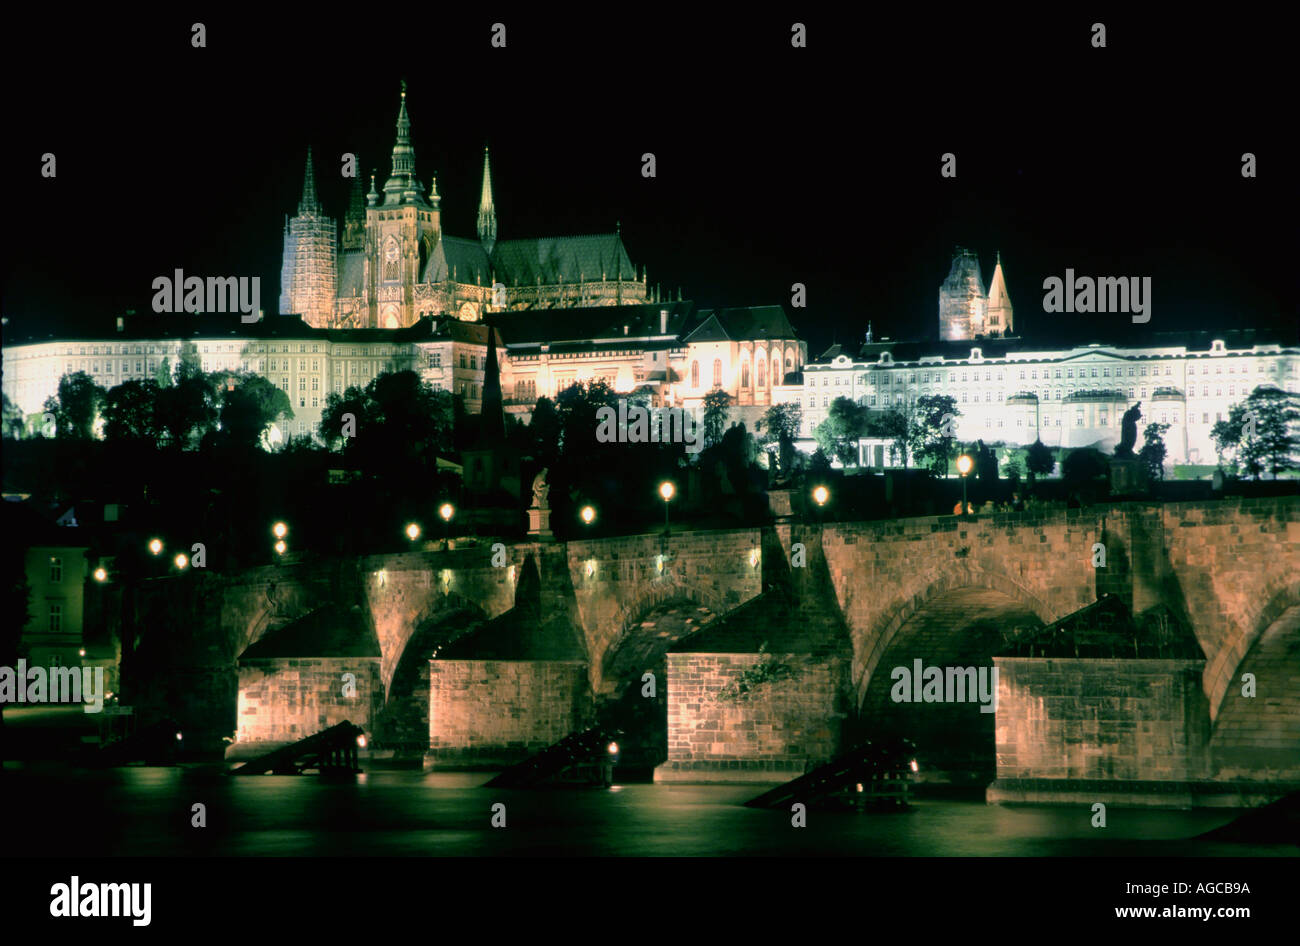 Europa República Checa Praga una vista del Castillo de Praga Hradcany y el Puente de Carlos sobre el río Valtava durante la noche Foto de stock